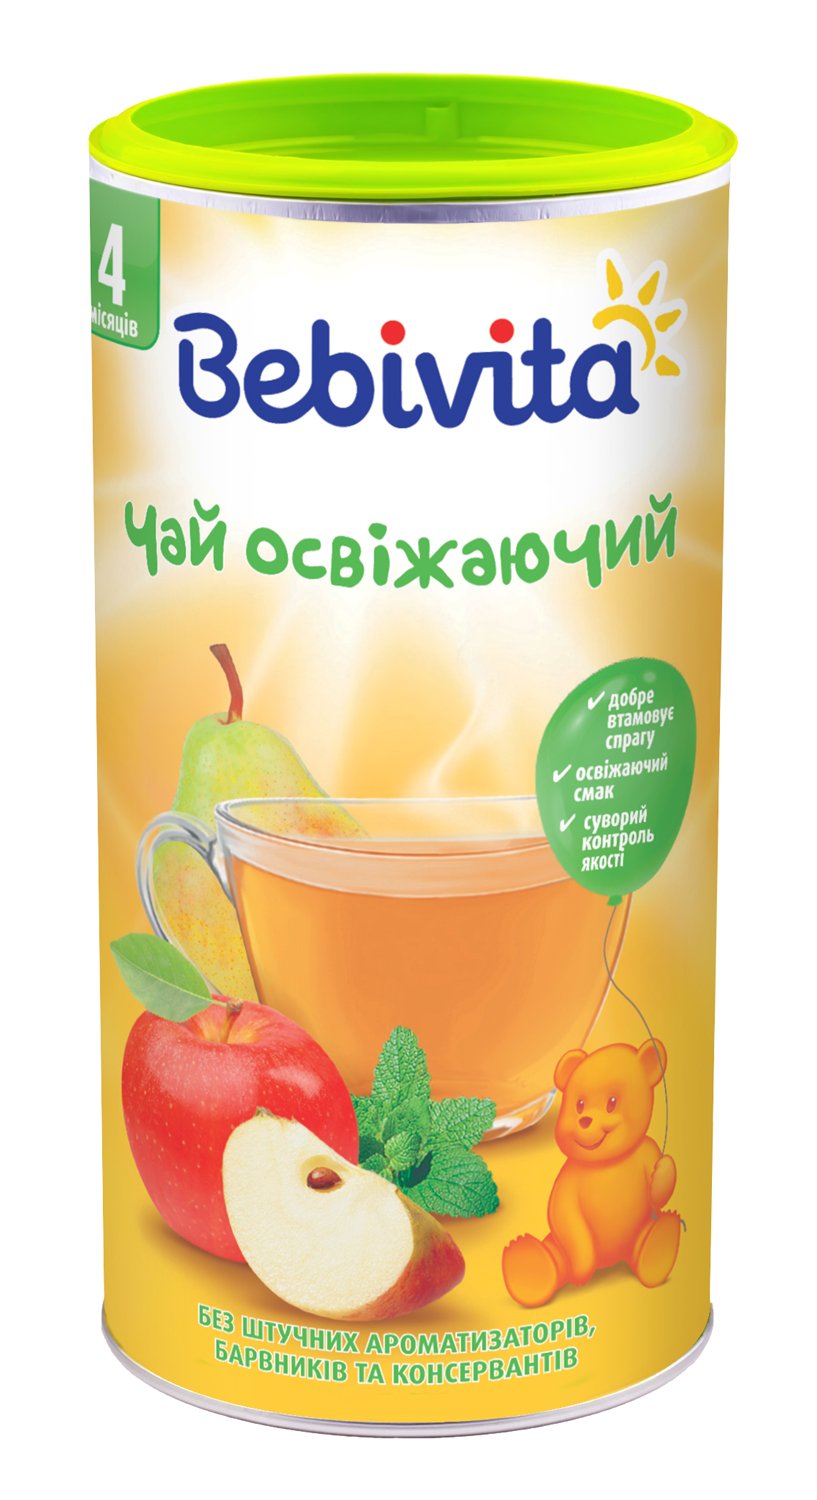 Чай освіжаючий Bebivita в гранулах, 200 г - фото 1